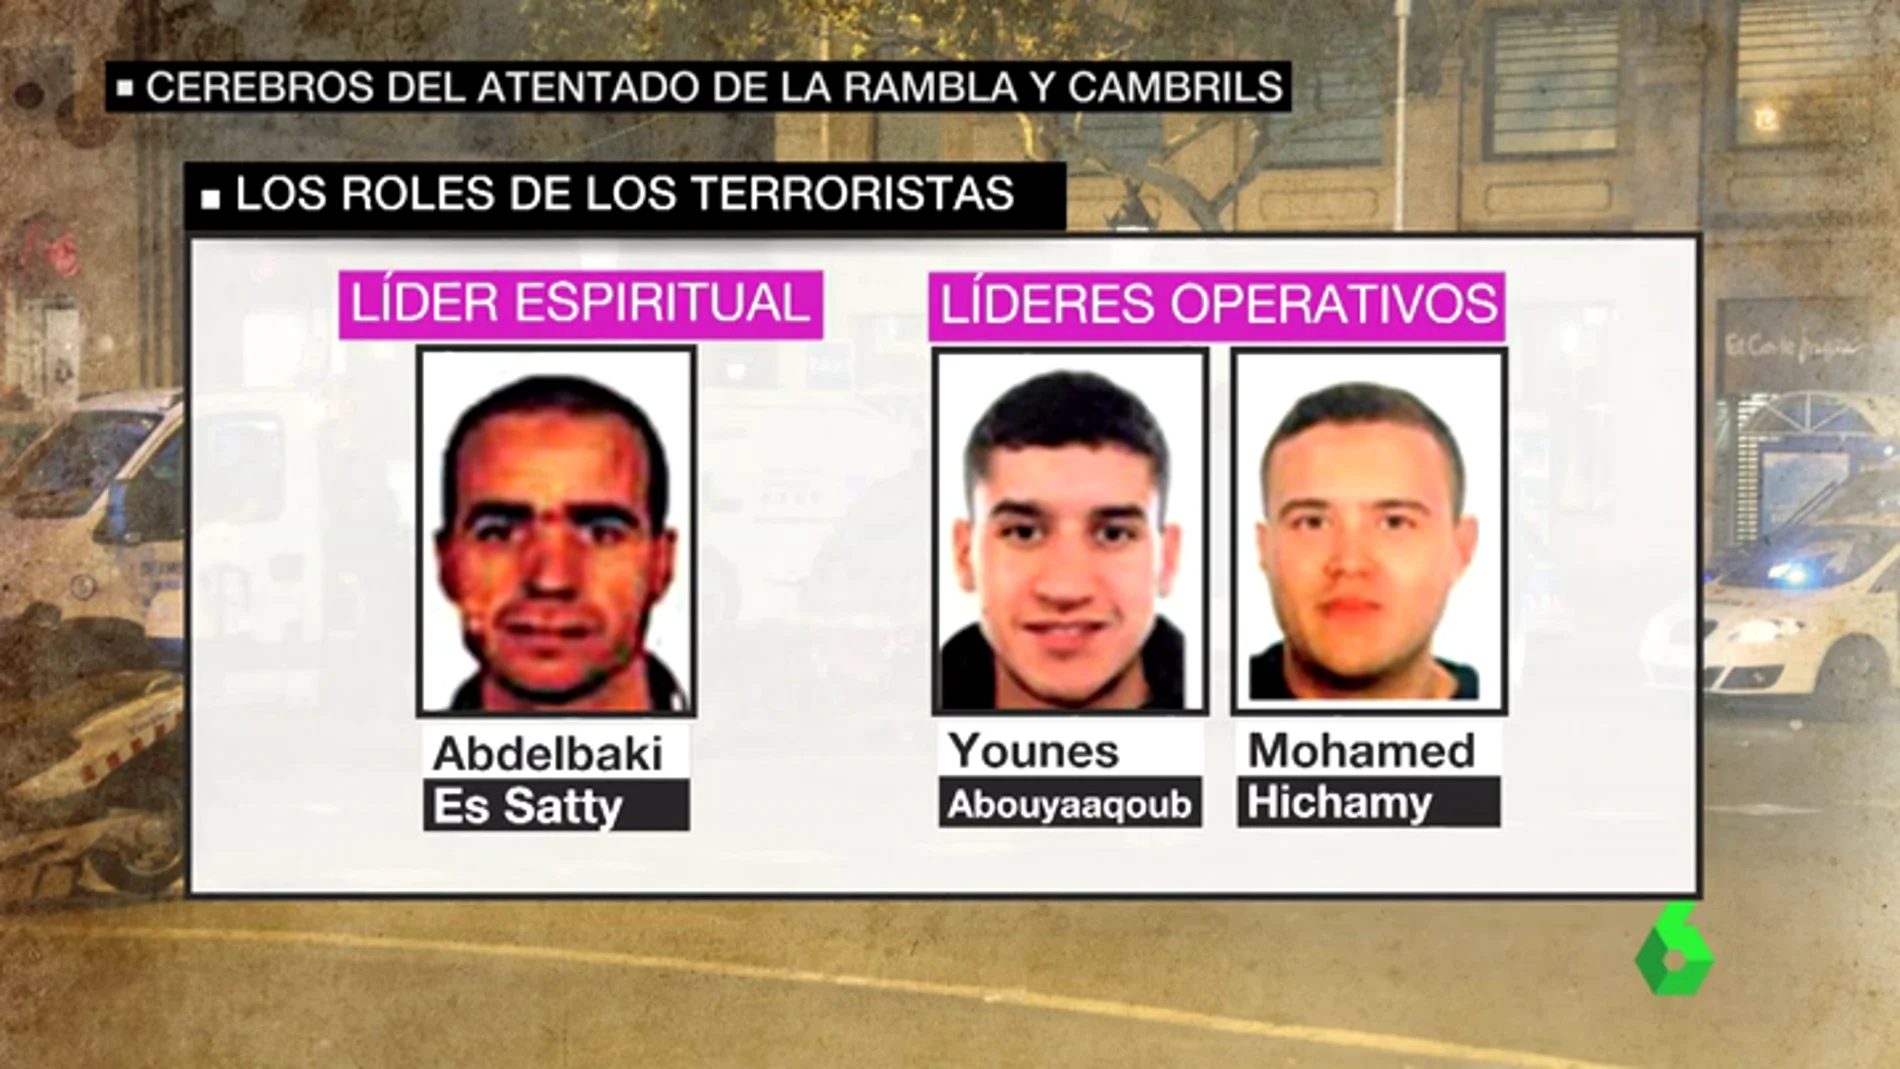 Los roles de los terroristas de Cataluña